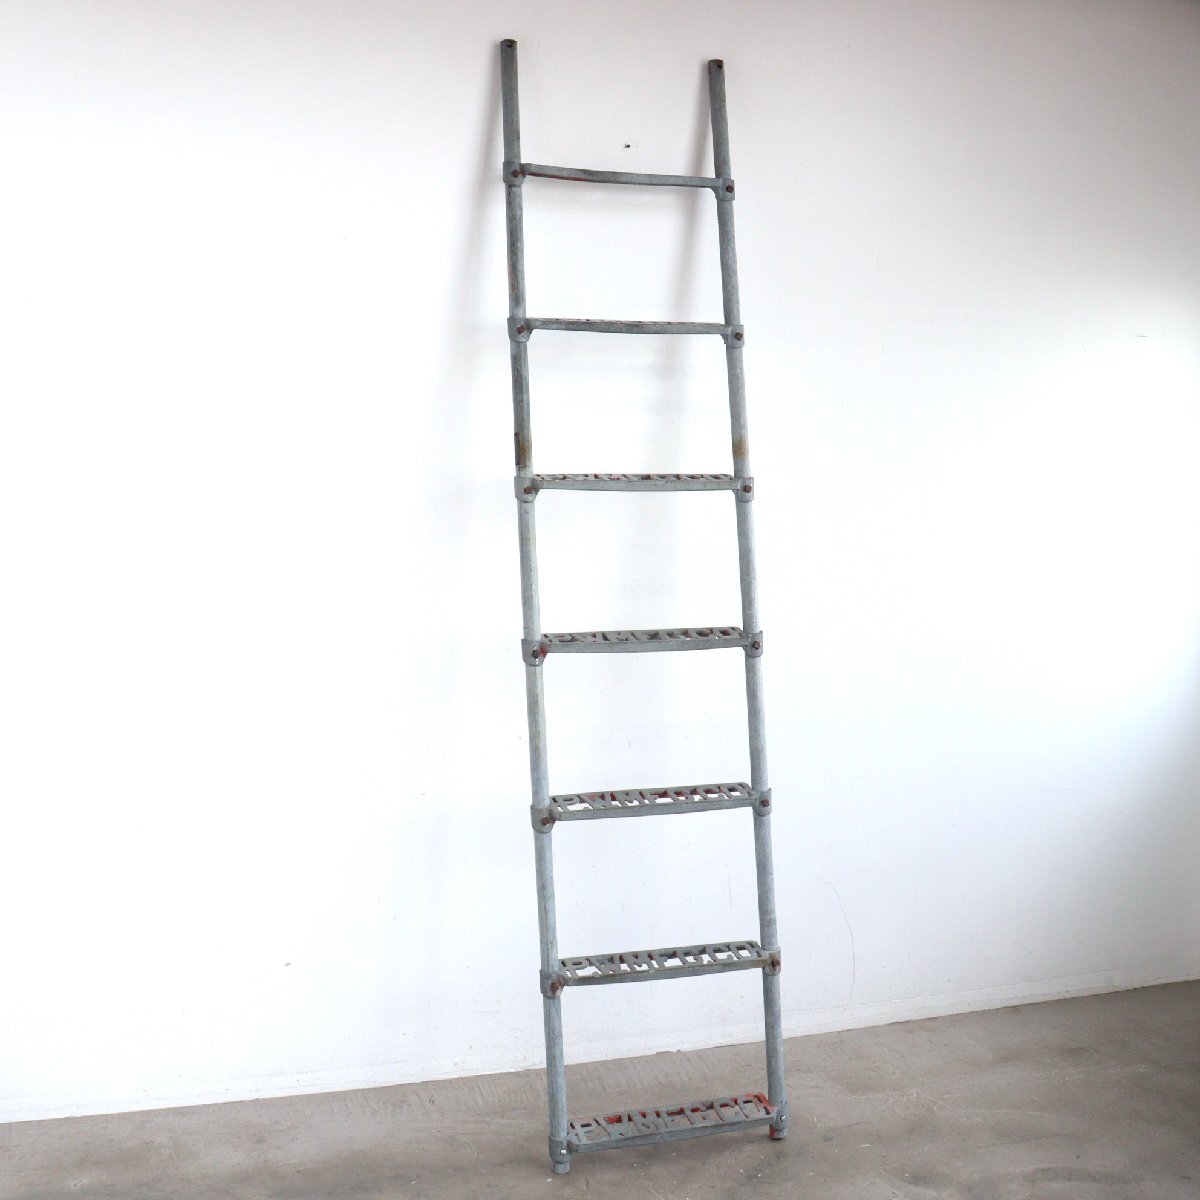 1920s~30s America Vintage metal ladder / ladder ..ladder ladder display store furniture antique USA #602-100-65-322